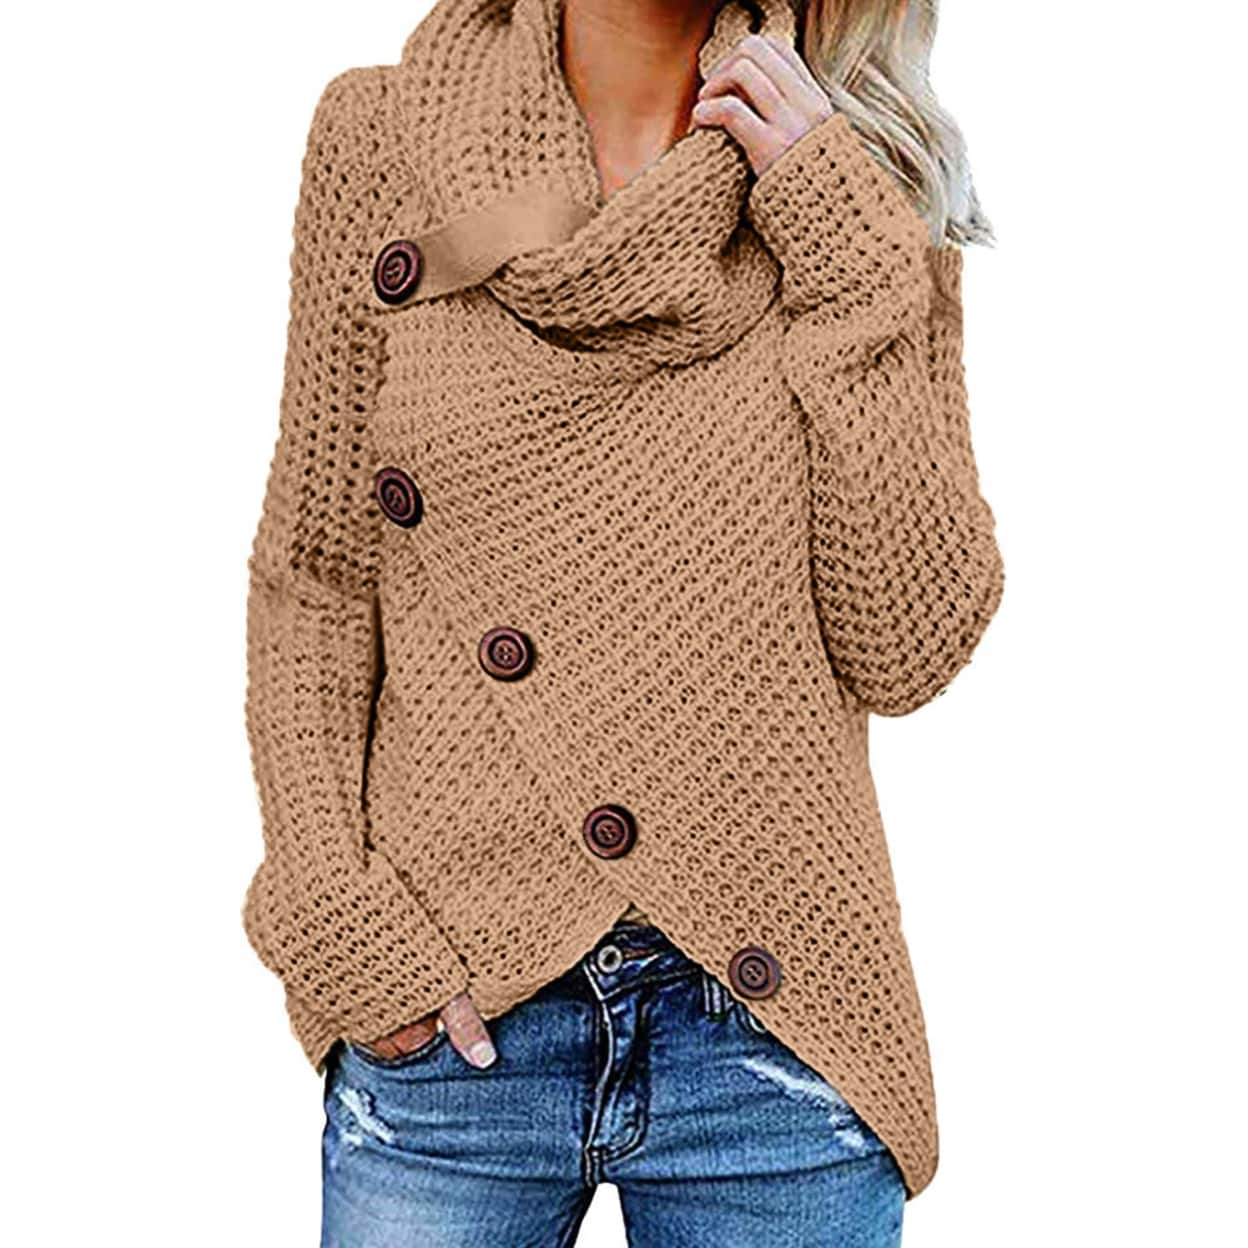 Women's High Neck Irregular Five Button Sweater